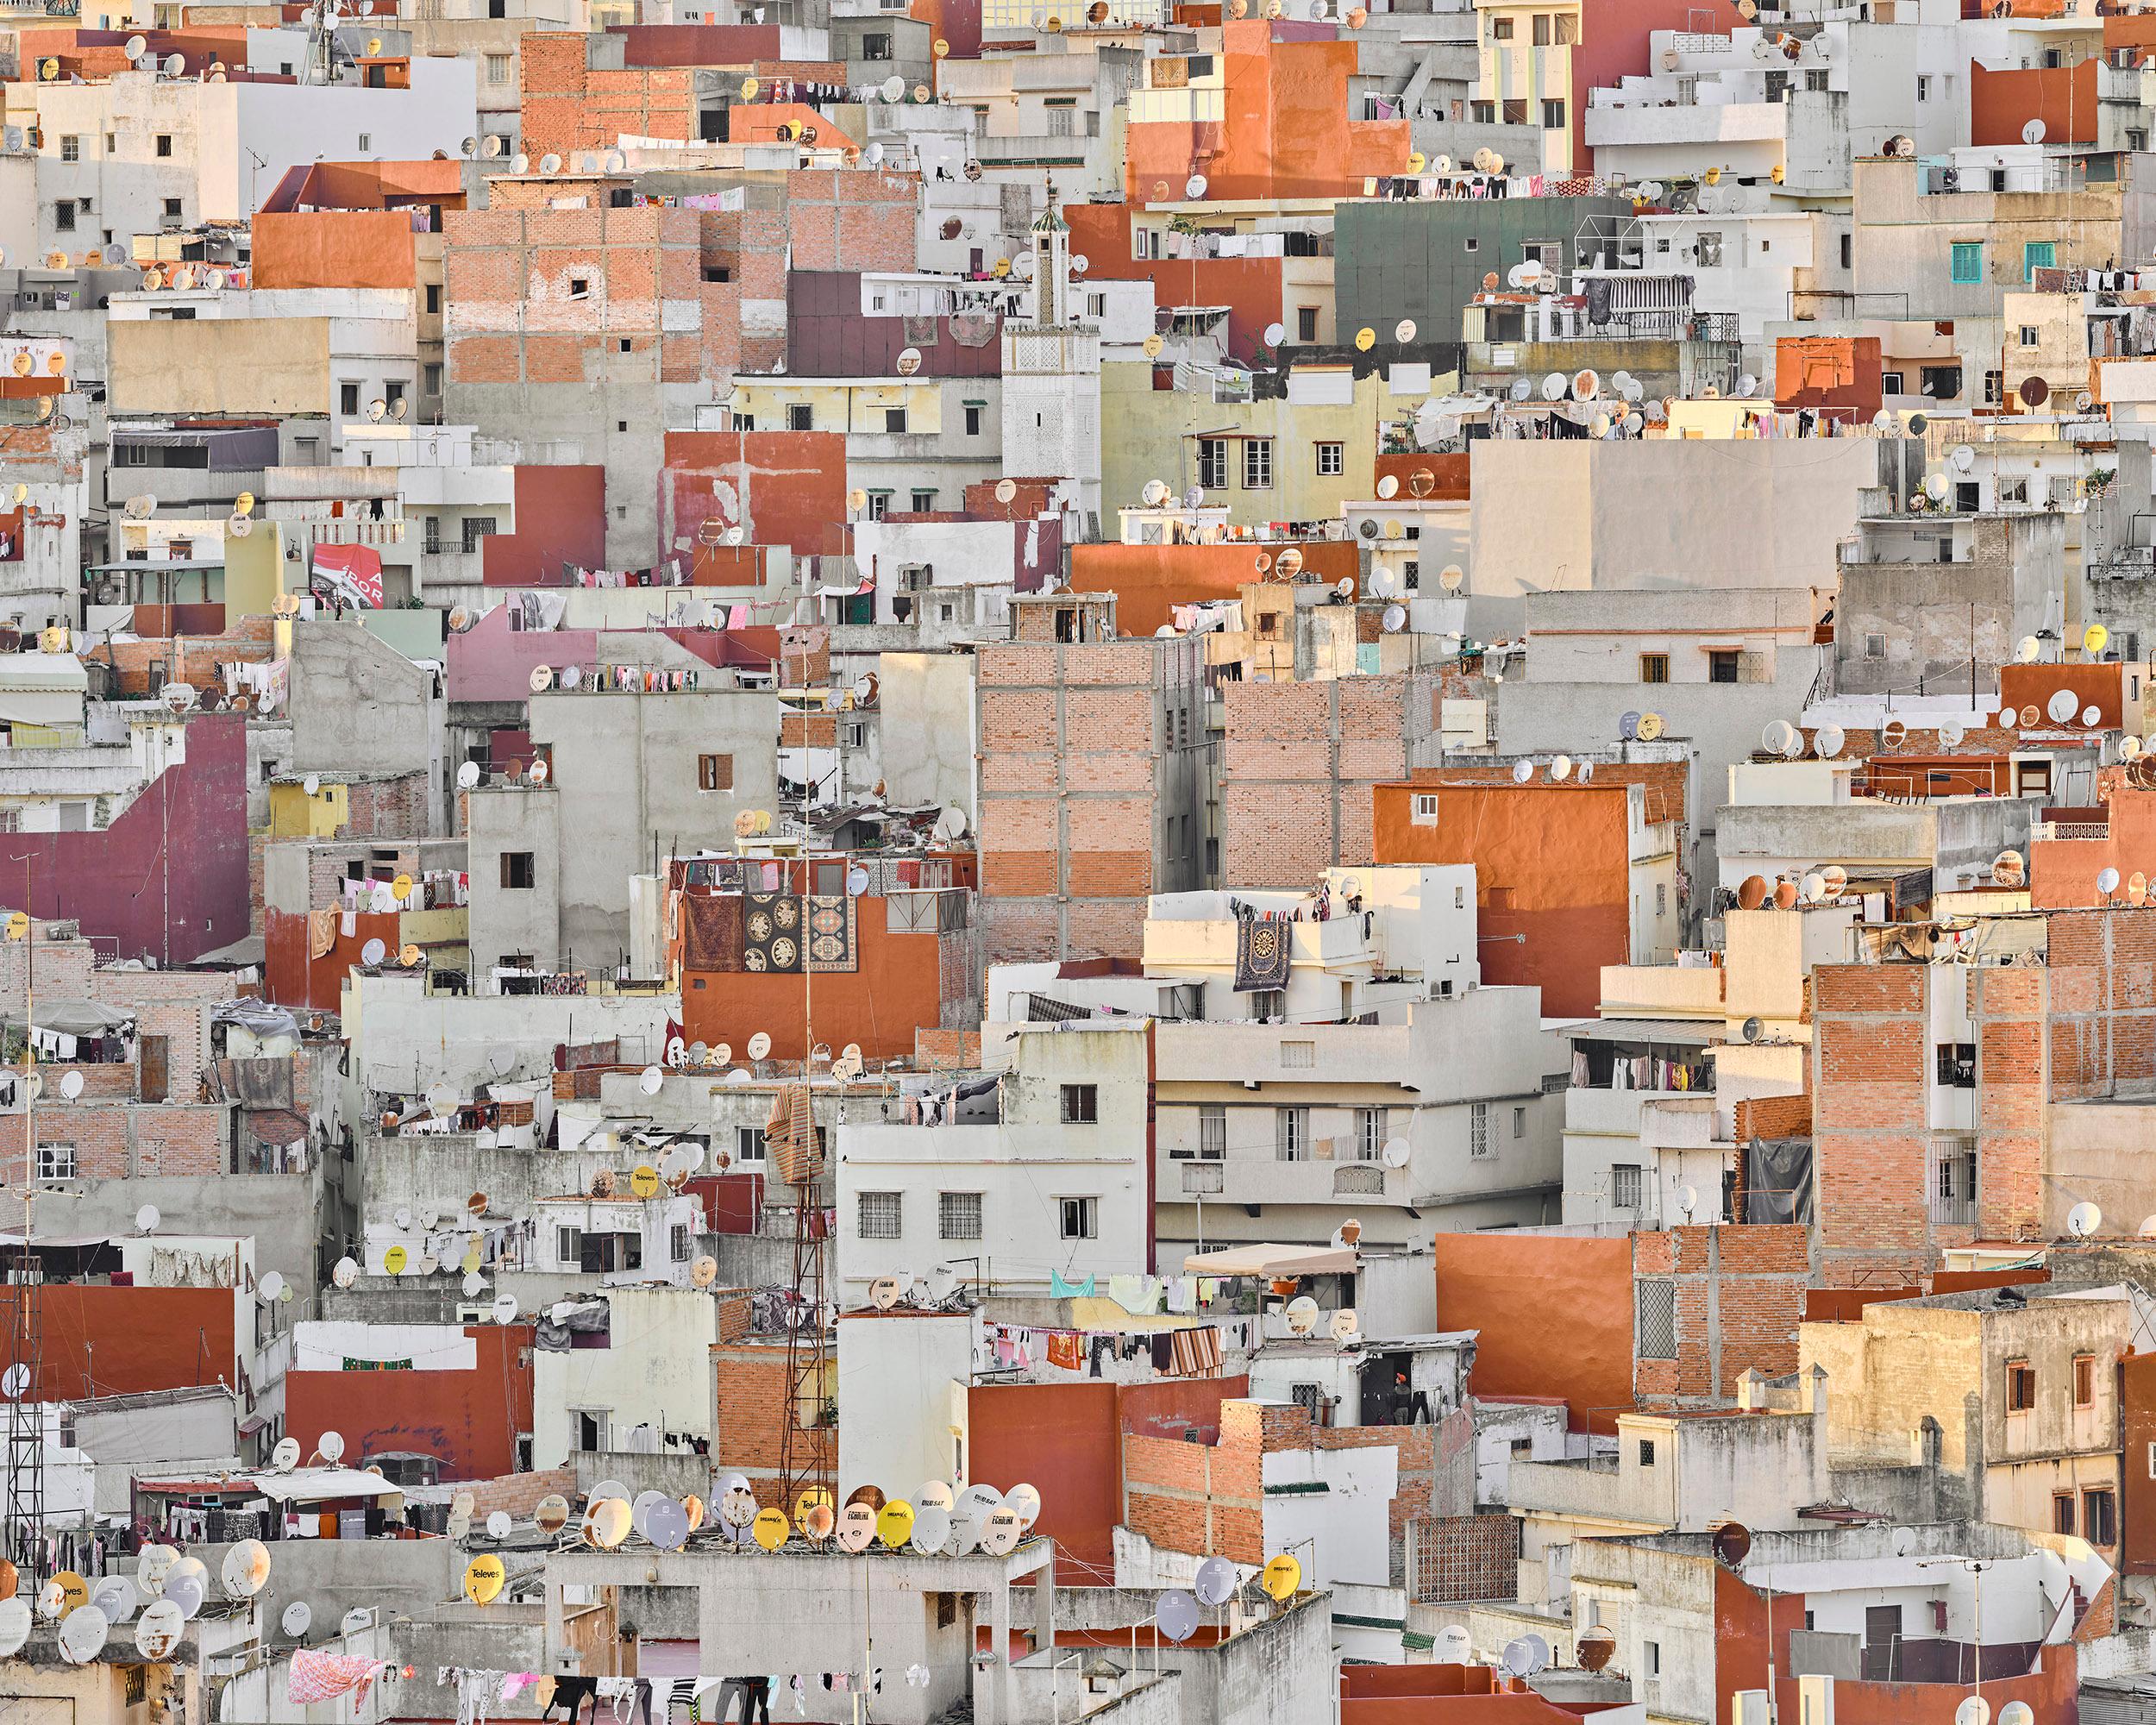 Marokko

Verfügbare Größen:
21 x 26 Zoll: Auflage von 7
32 x 40 Zoll: Auflage von 7
44 x 55 Zoll: Auflage von 10 Stück
59 x 73,5 Zoll: Auflage von 5

David Burdeny (geb. 1968. Winnipeg, Kanada) schloss sein Studium der Architektur und